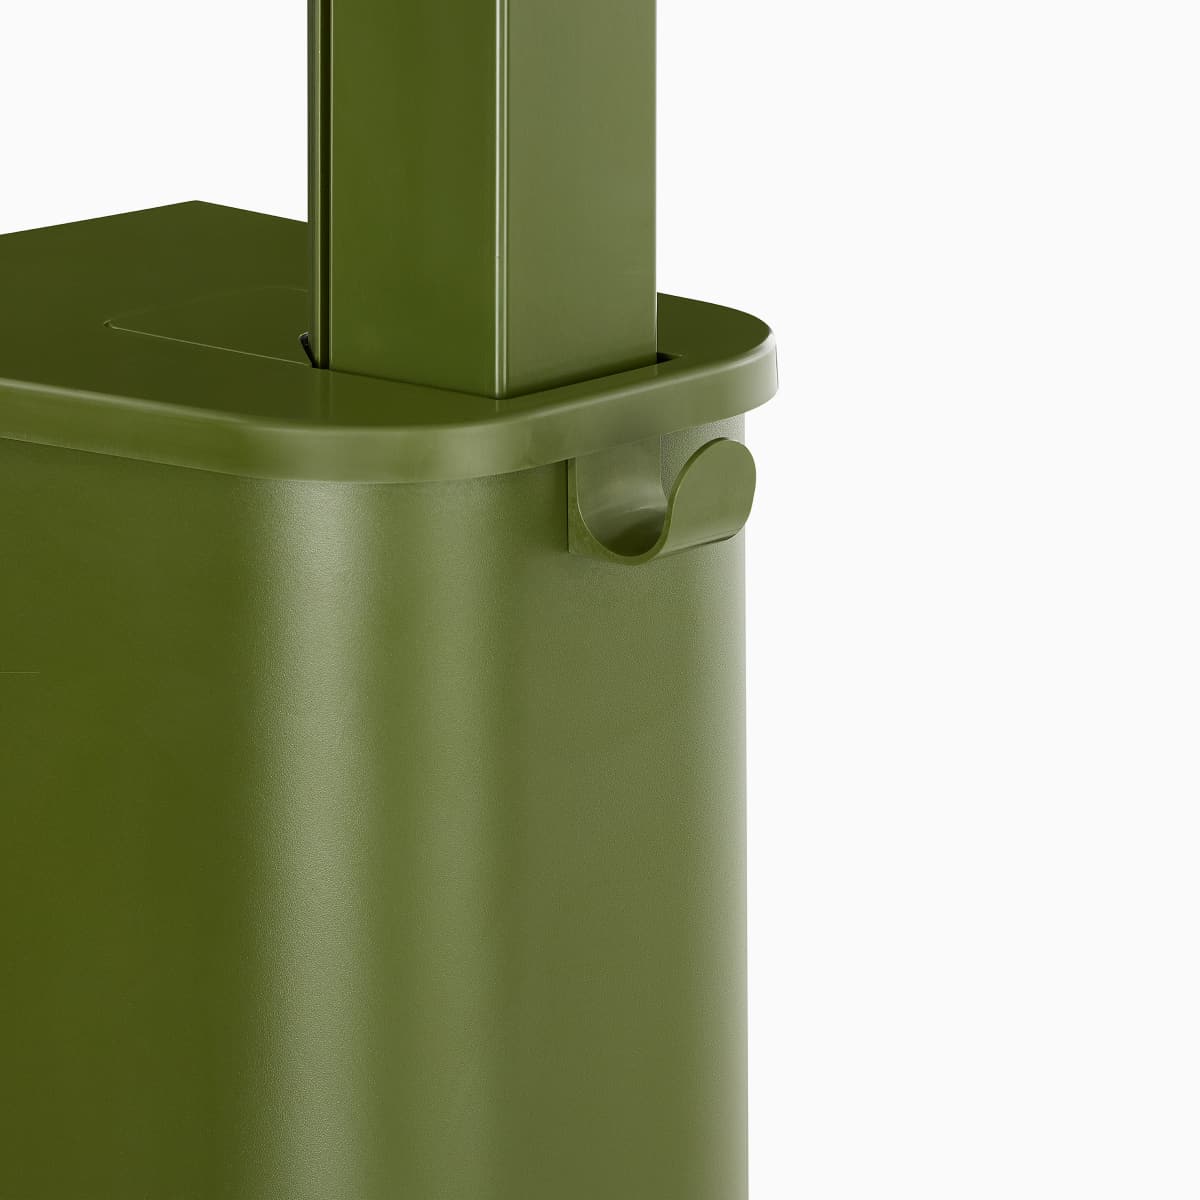 Imagen en primer plano de una base de Micro Pack OE1 simple en verde, con un gancho para bolsos y carteras, visto desde el ángulo de frente.